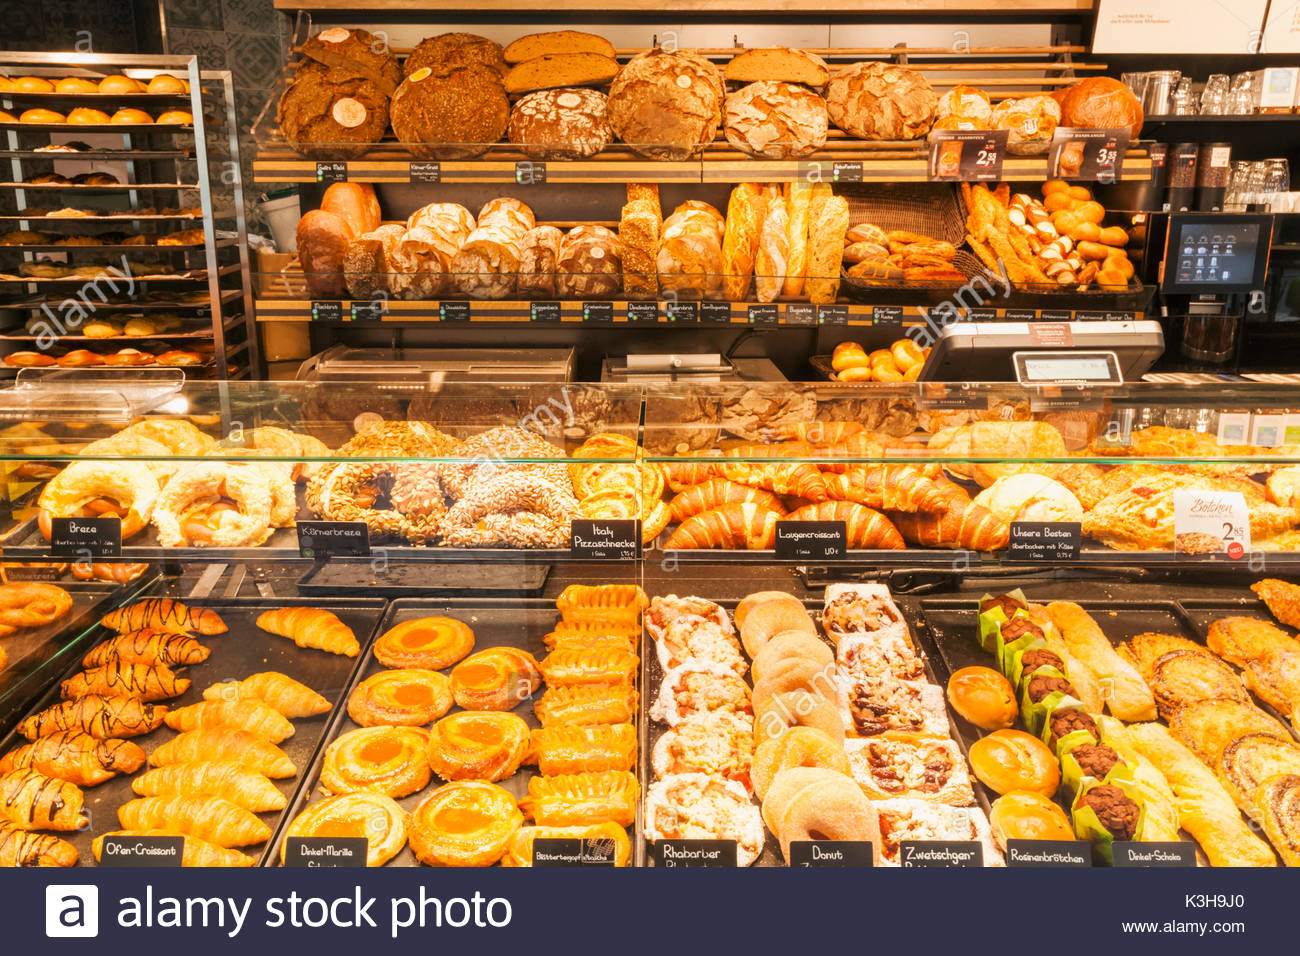 ร้านขนมปังแบรนด์ไหนบ้างที่เป็นสไตล์อบสดใหม่ที่ร้านแล้วมีแฟรนไชส์ - Pantip